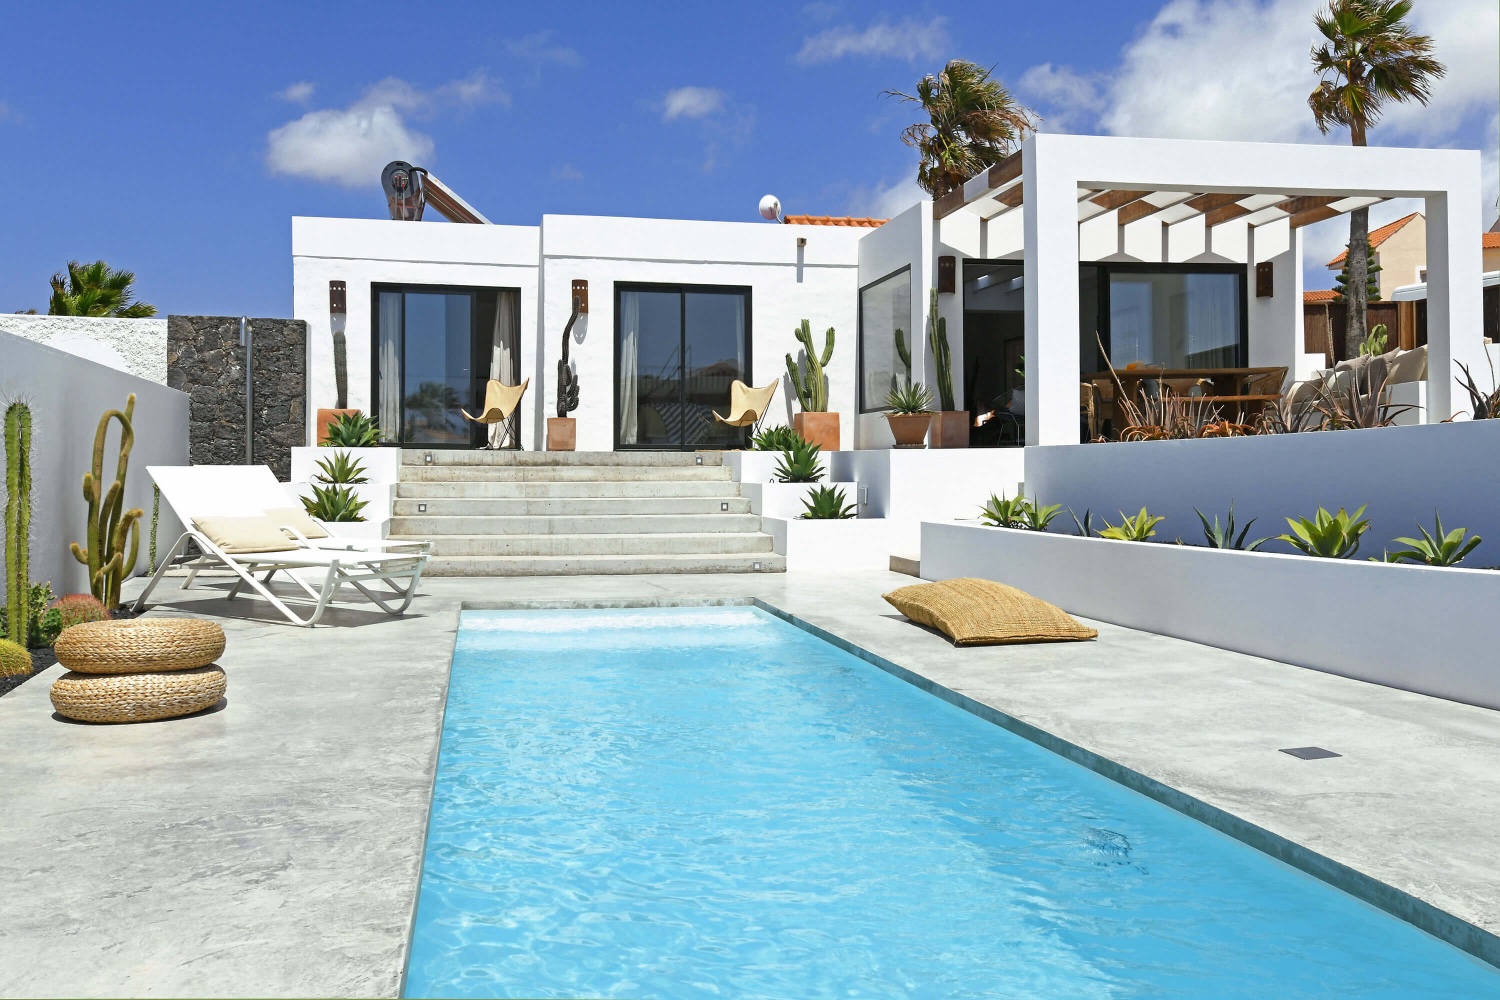 Cette villa extrêmement belle et moderne avec une grande piscine privée est meublée avec goût et parfaitement située à quelques minutes à pied des belles plages de La Pared et Viejo Rey.